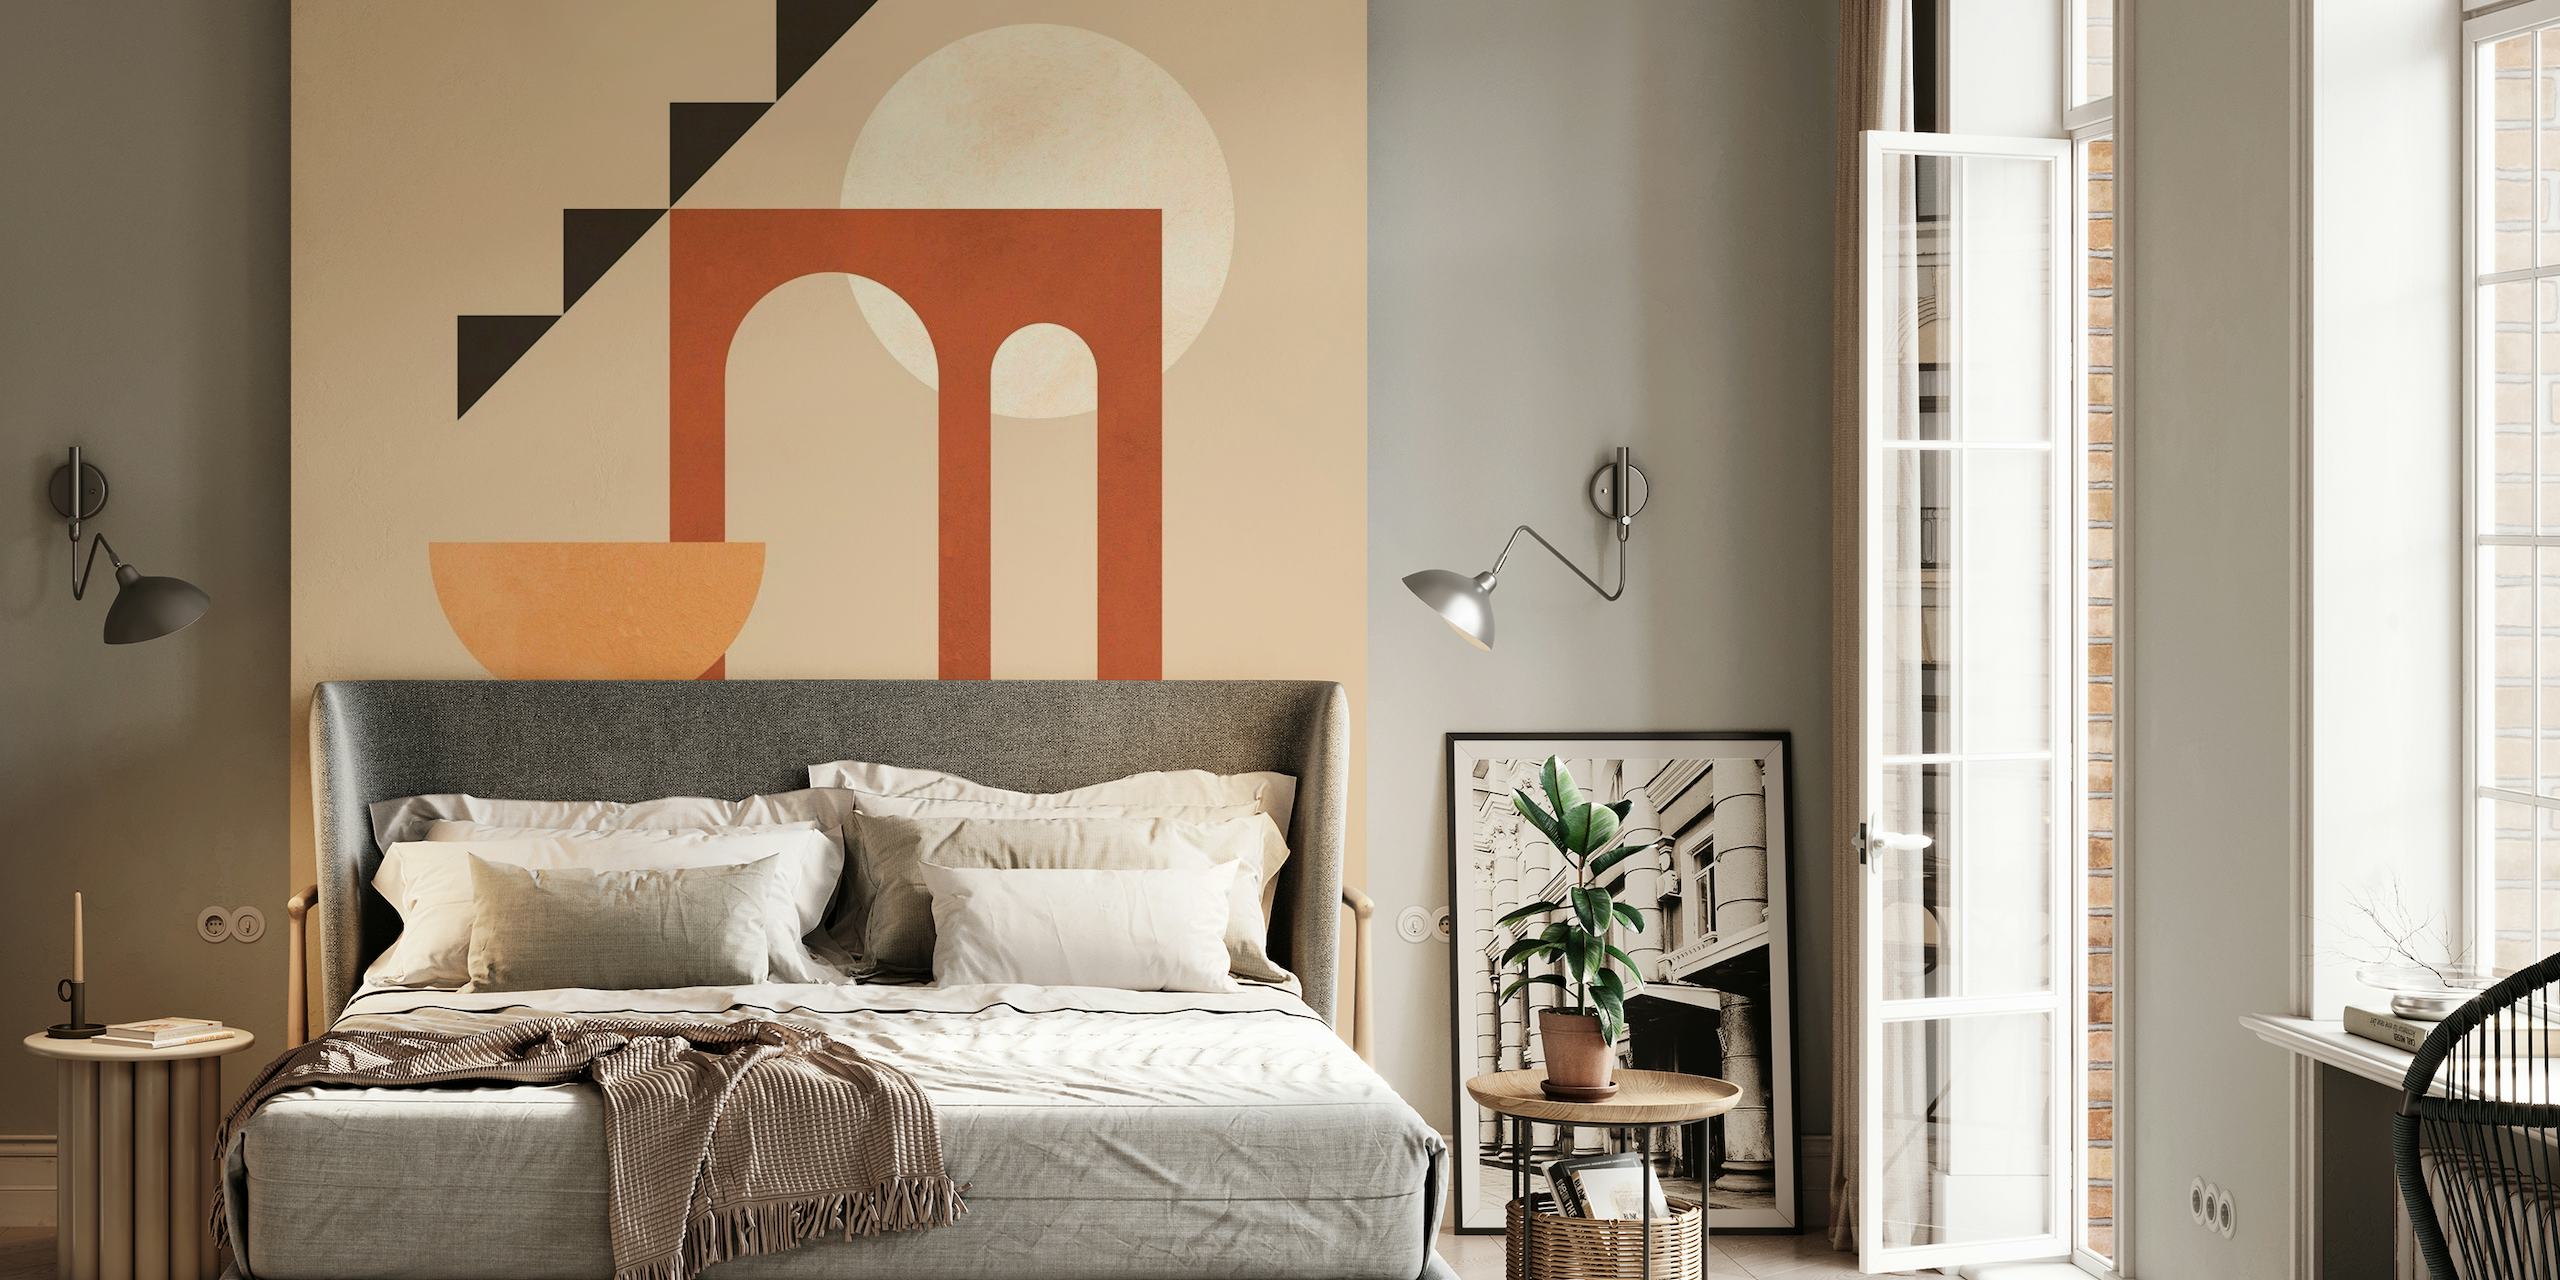 Mural abstracto arquitectónico minimalista con formas geométricas y tonos tierra